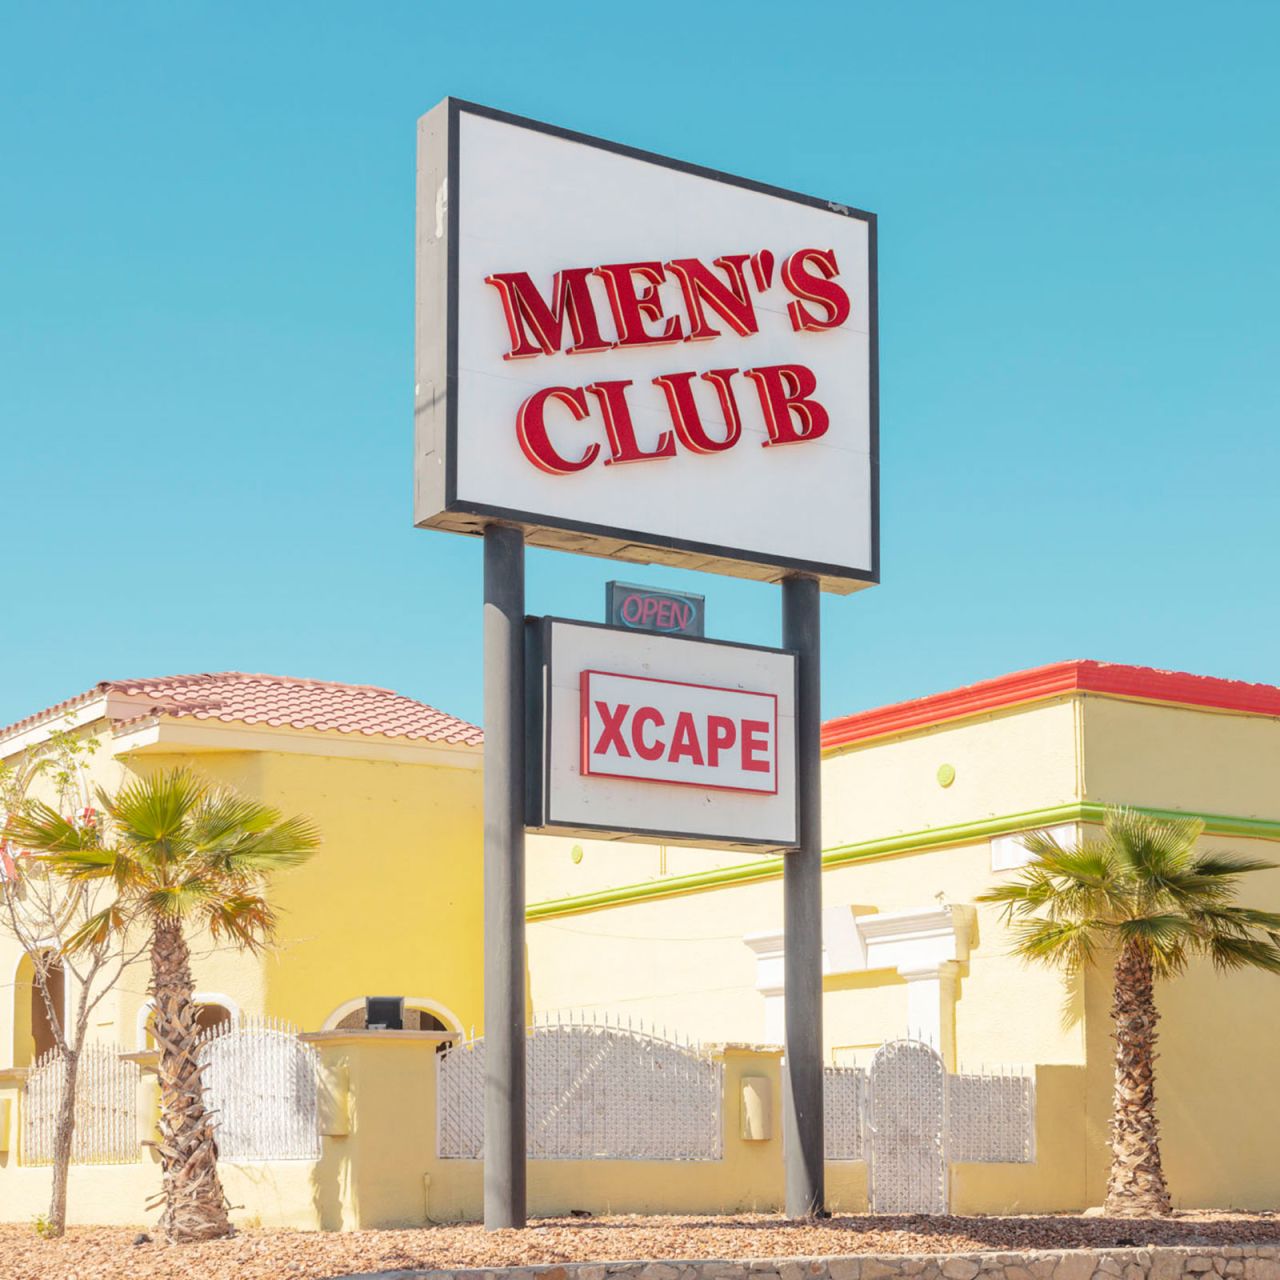 Xcape Mens Club in El Paso, Texas.